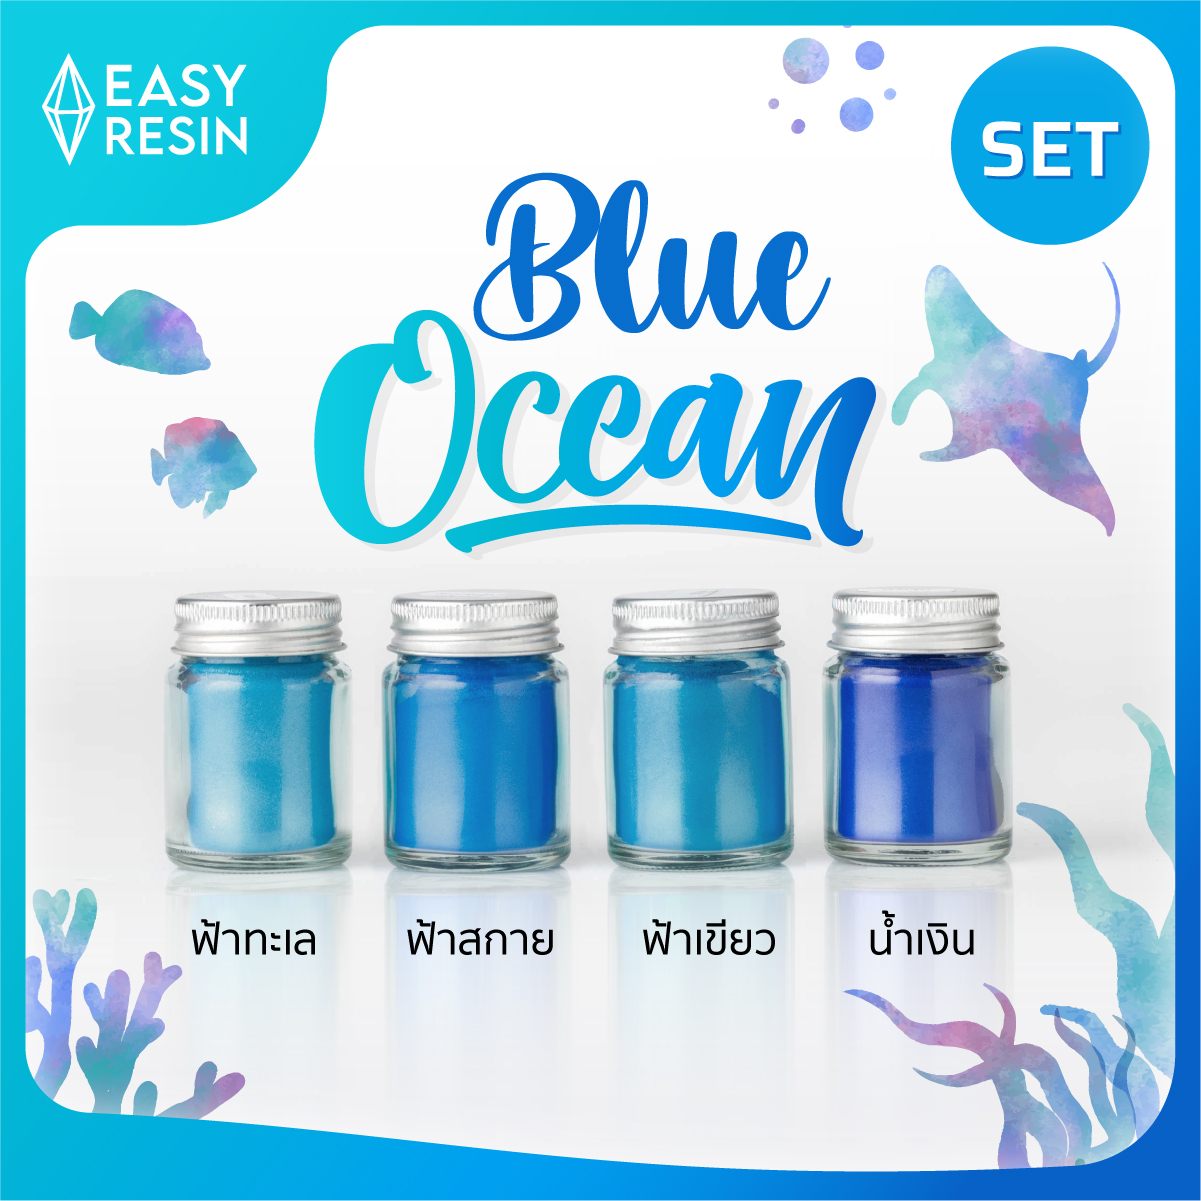 สีผสมเรซิ่น Blue ocean SET (ส่งฟรี) เมทัลลิคประกาย สีสด ใช้กับเรซิ่นทุกชนิด เช่น เรซิ่นใส เรซิ่นทำเคส เรซิ่นเครื่องประดับ เรซิ่นหล่อไม้ เรซิ่นเคลือบไม้ เรซิ่นงานไม้ เรซิ่นอีพ็อกซี่ Epoxy Resin